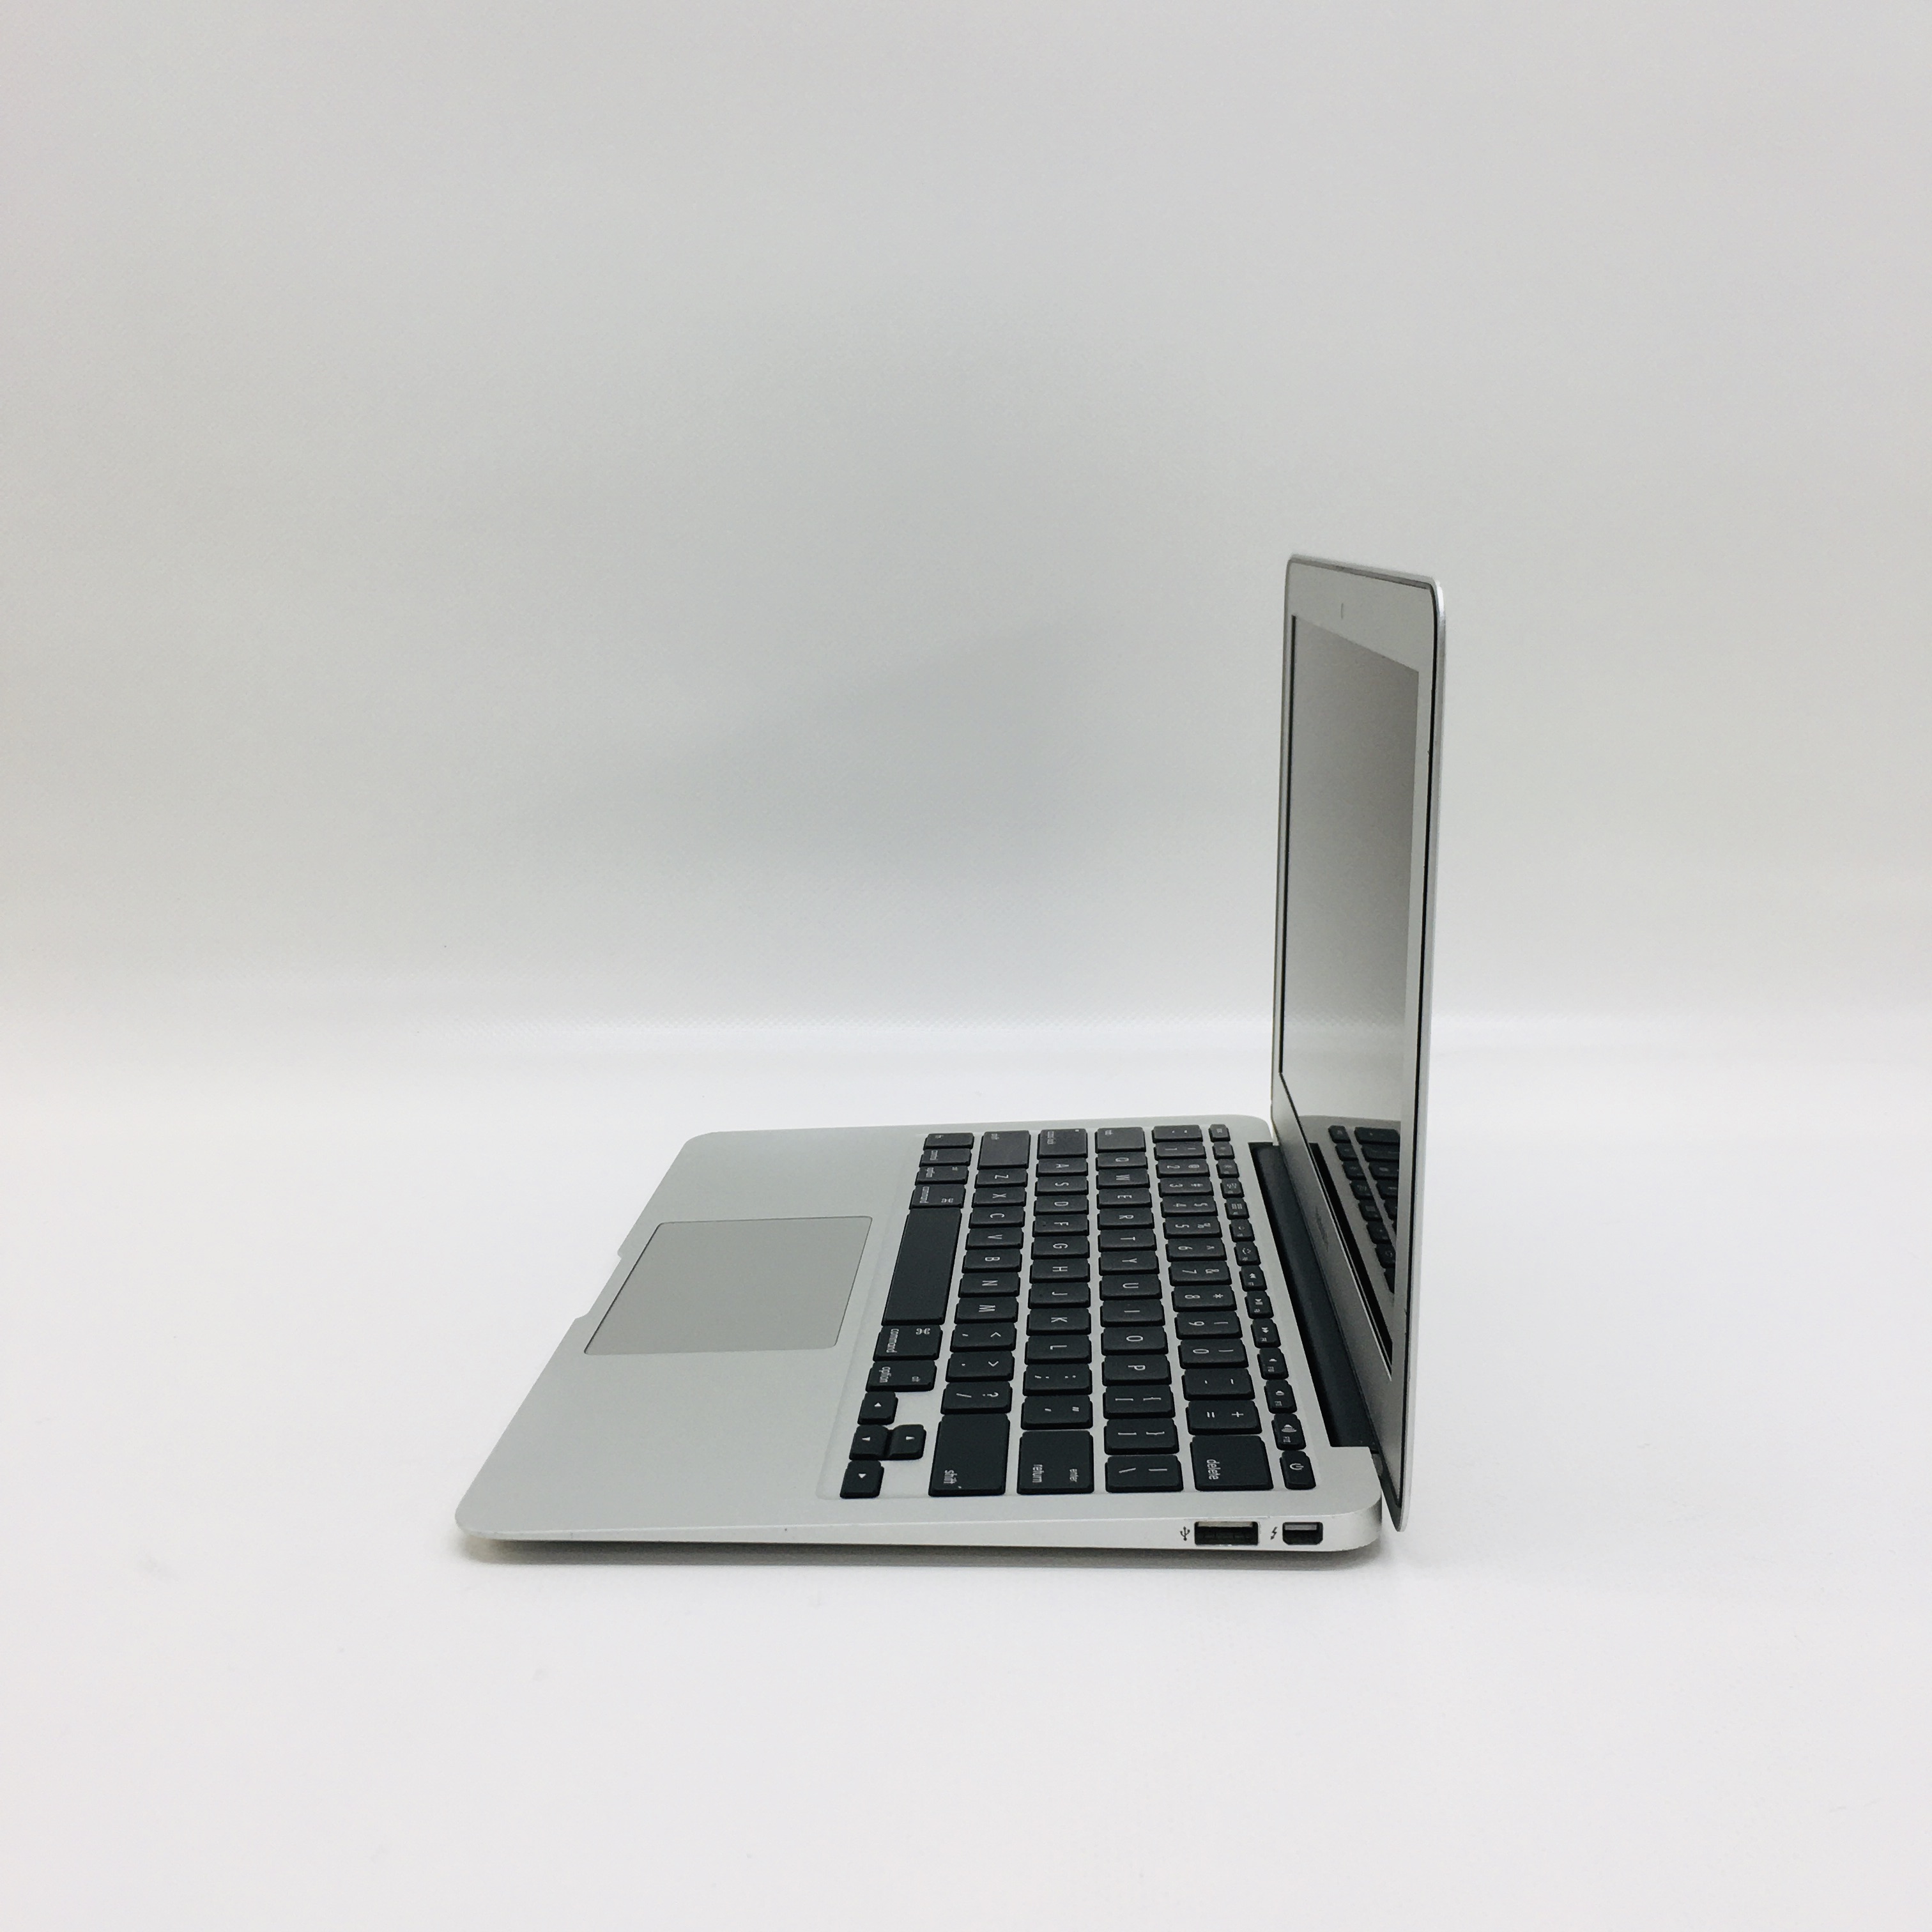 MacBook Air 11" Mid 2013 (Intel Core i5 1.3 GHz 4 GB RAM 128 GB SSD), Intel Core i5 1.3 GHz, 4 GB RAM, 128 GB SSD, image 3